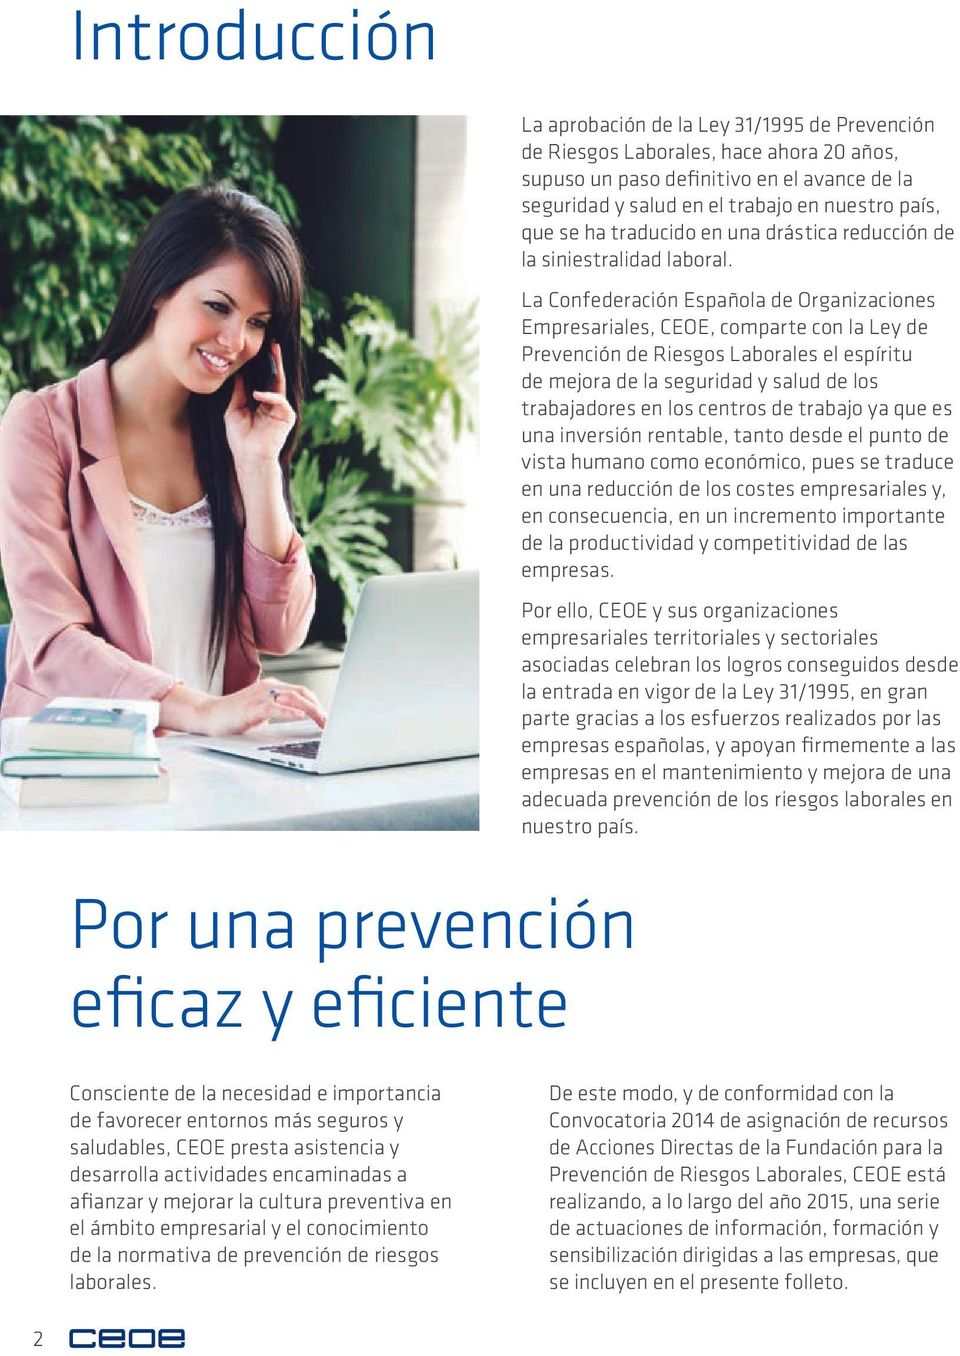 La Confederación Española de Organizaciones Empresariales, CEOE, comparte con la Ley de Prevención de Riesgos Laborales el espíritu de mejora de la seguridad y salud de los trabajadores en los